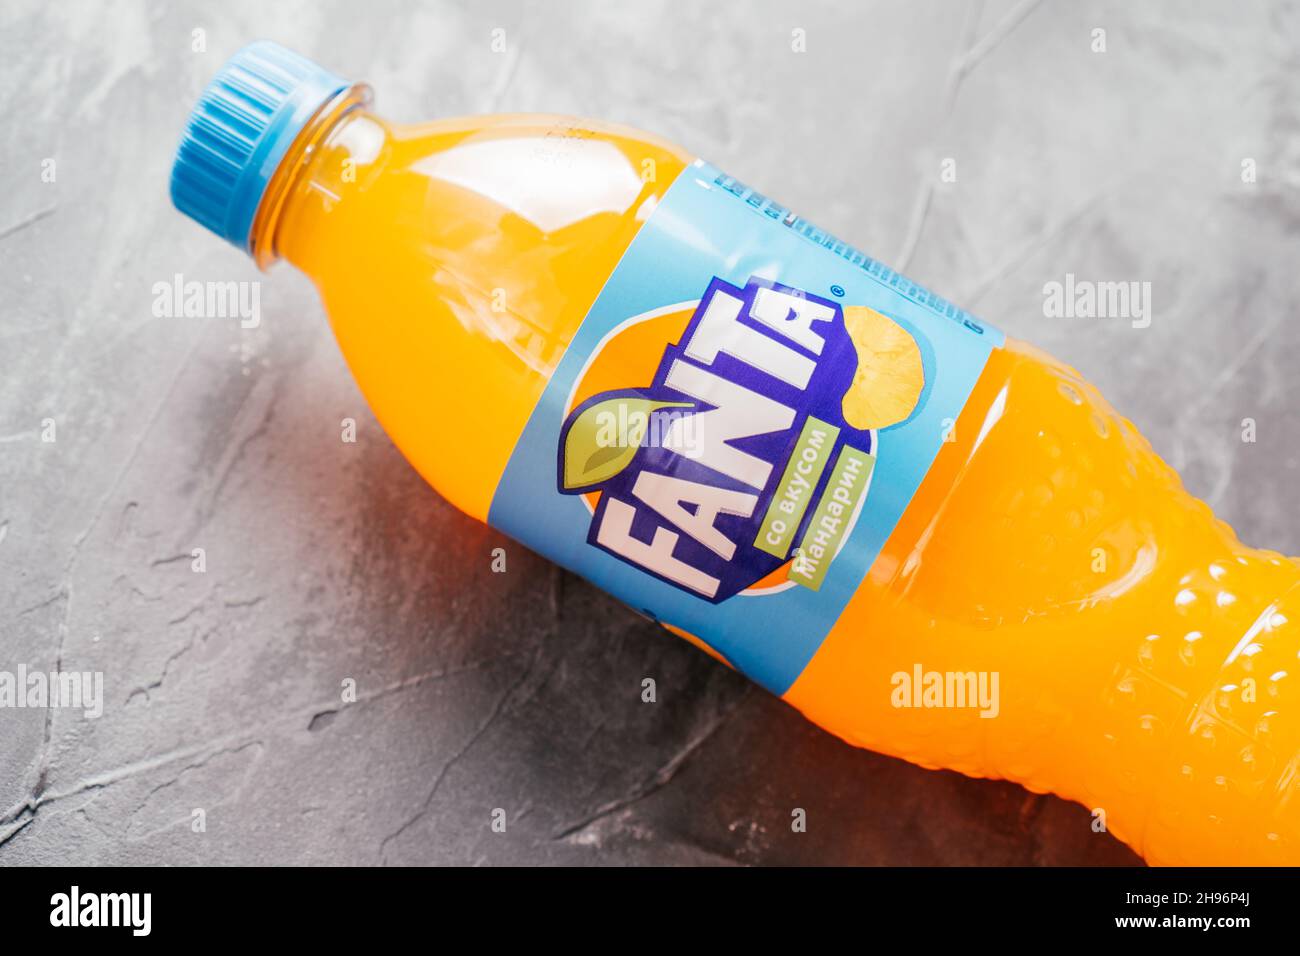 La bouteille en plastique transparent de Fanta se trouve sur une surface en béton gris.Bouteille avec boisson à l'orange et étiquette bleue au goût de mandarine en russe Banque D'Images